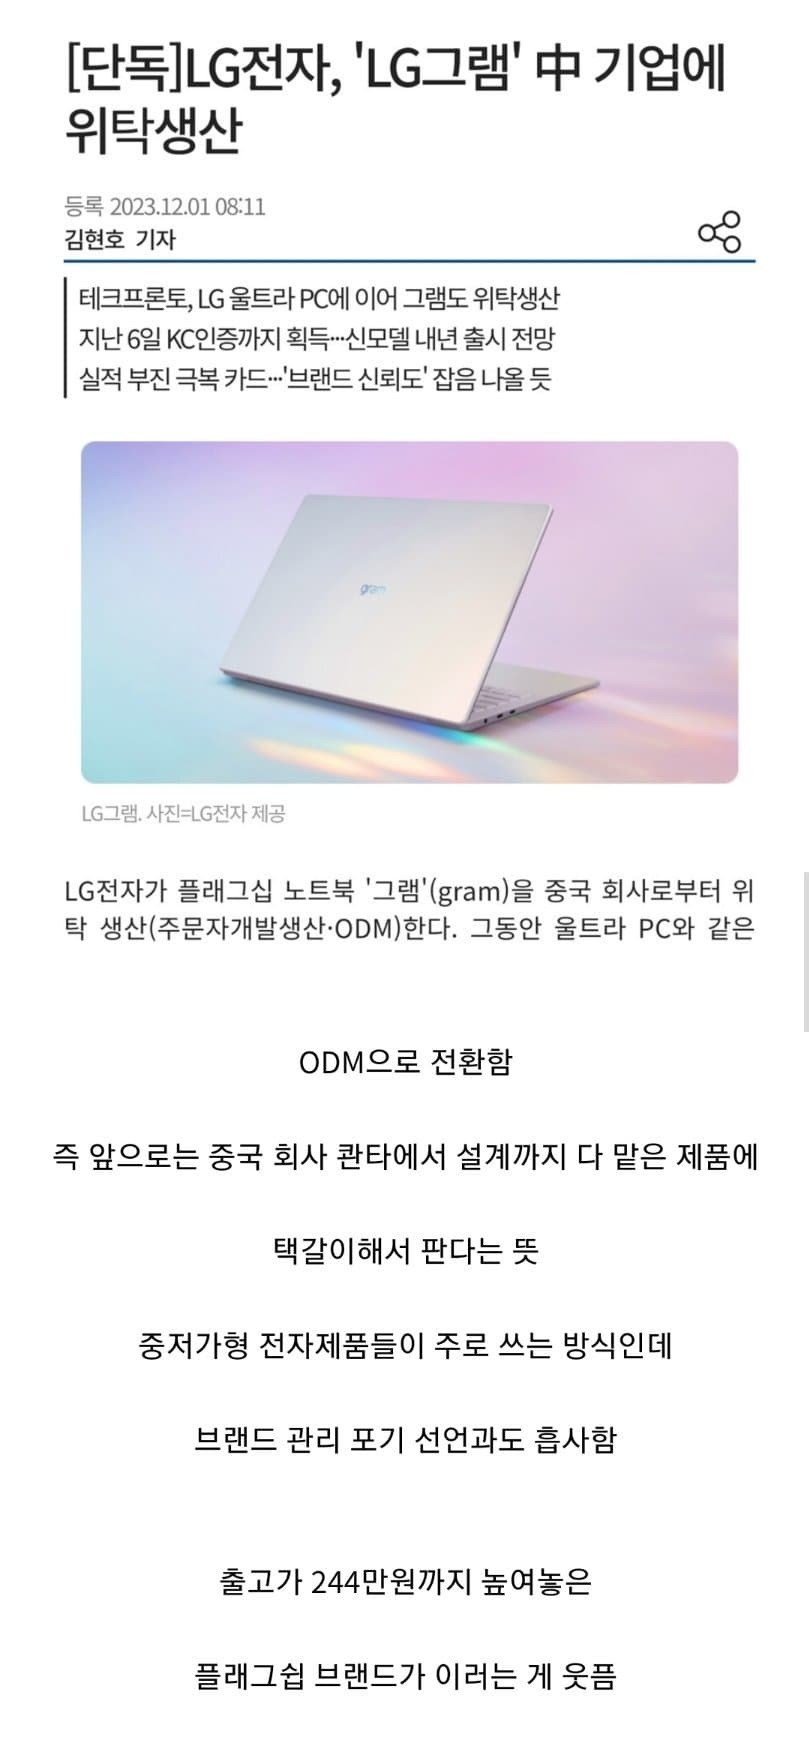 LG 노트북 그램 근황